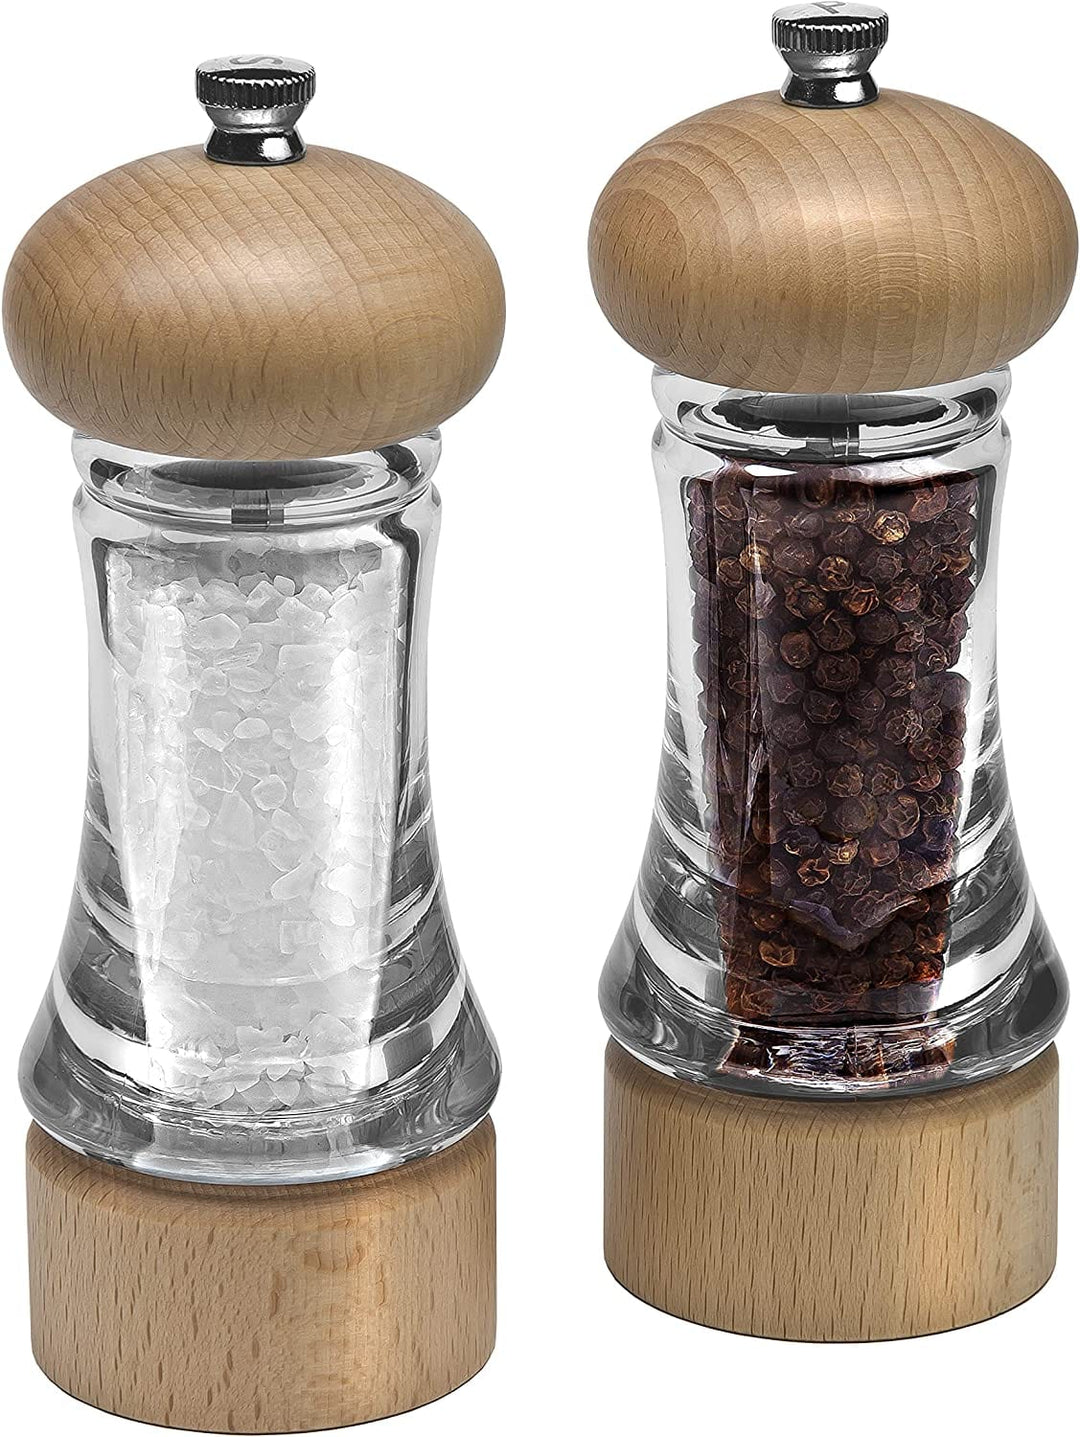 https://www.kooihousewares.com/cdn/shop/files/zyliss-salt-pepper-shakers-cole-mason-beech-wood-acrylic-salt-pepper-mill-set-30221213499427.jpg?v=1690825143&width=1080